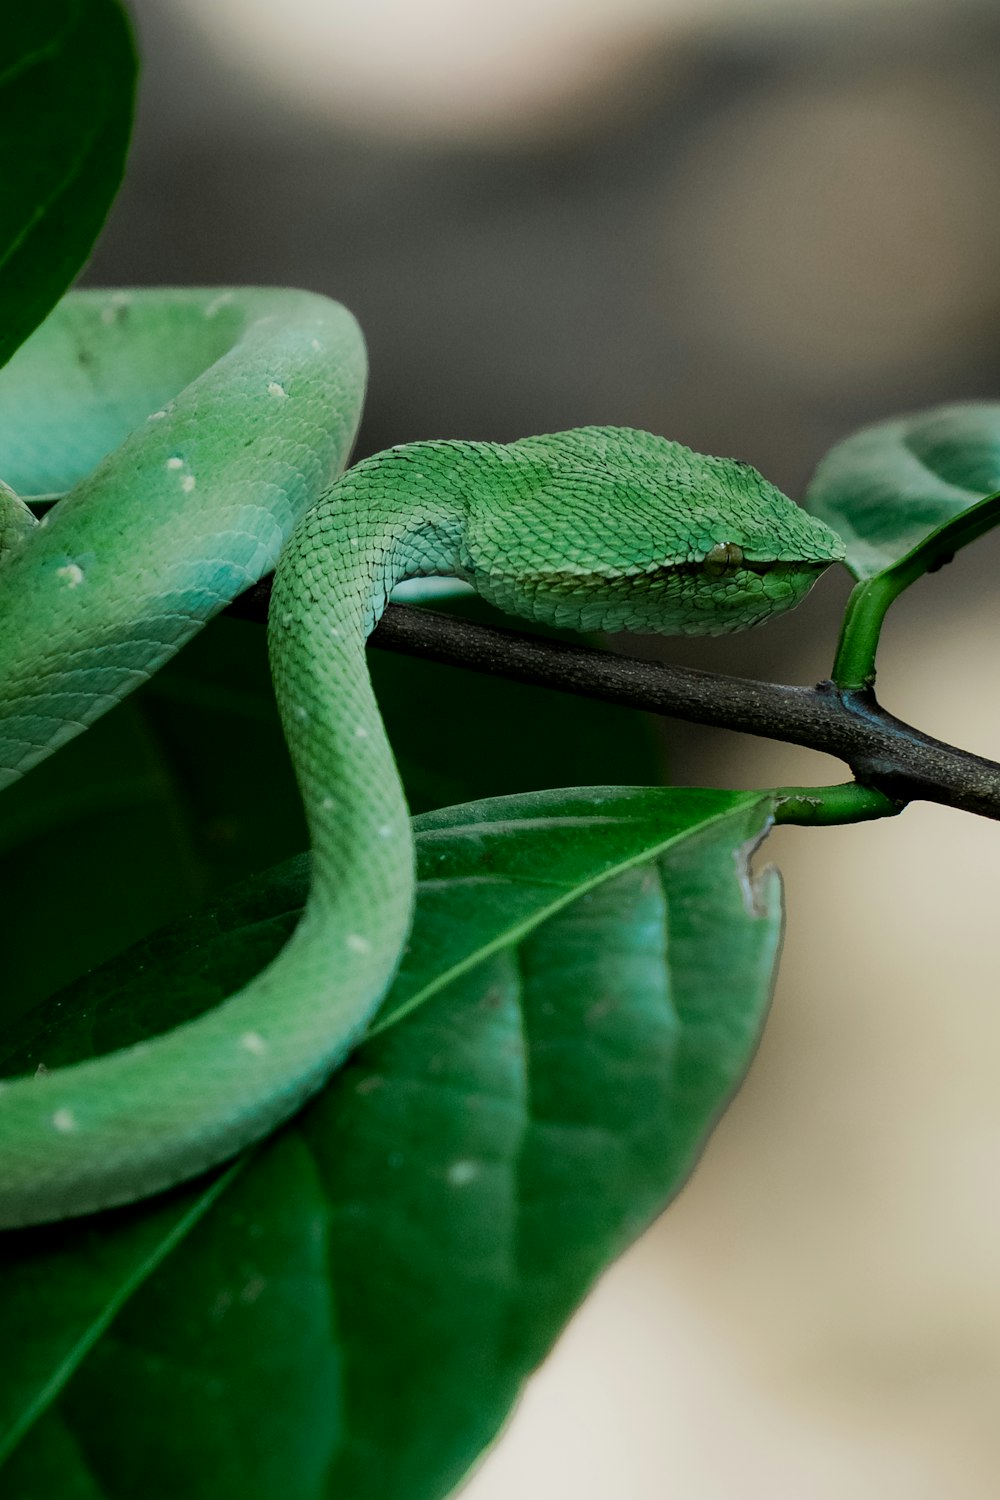 uma cobra verde sentada em cima de uma folha